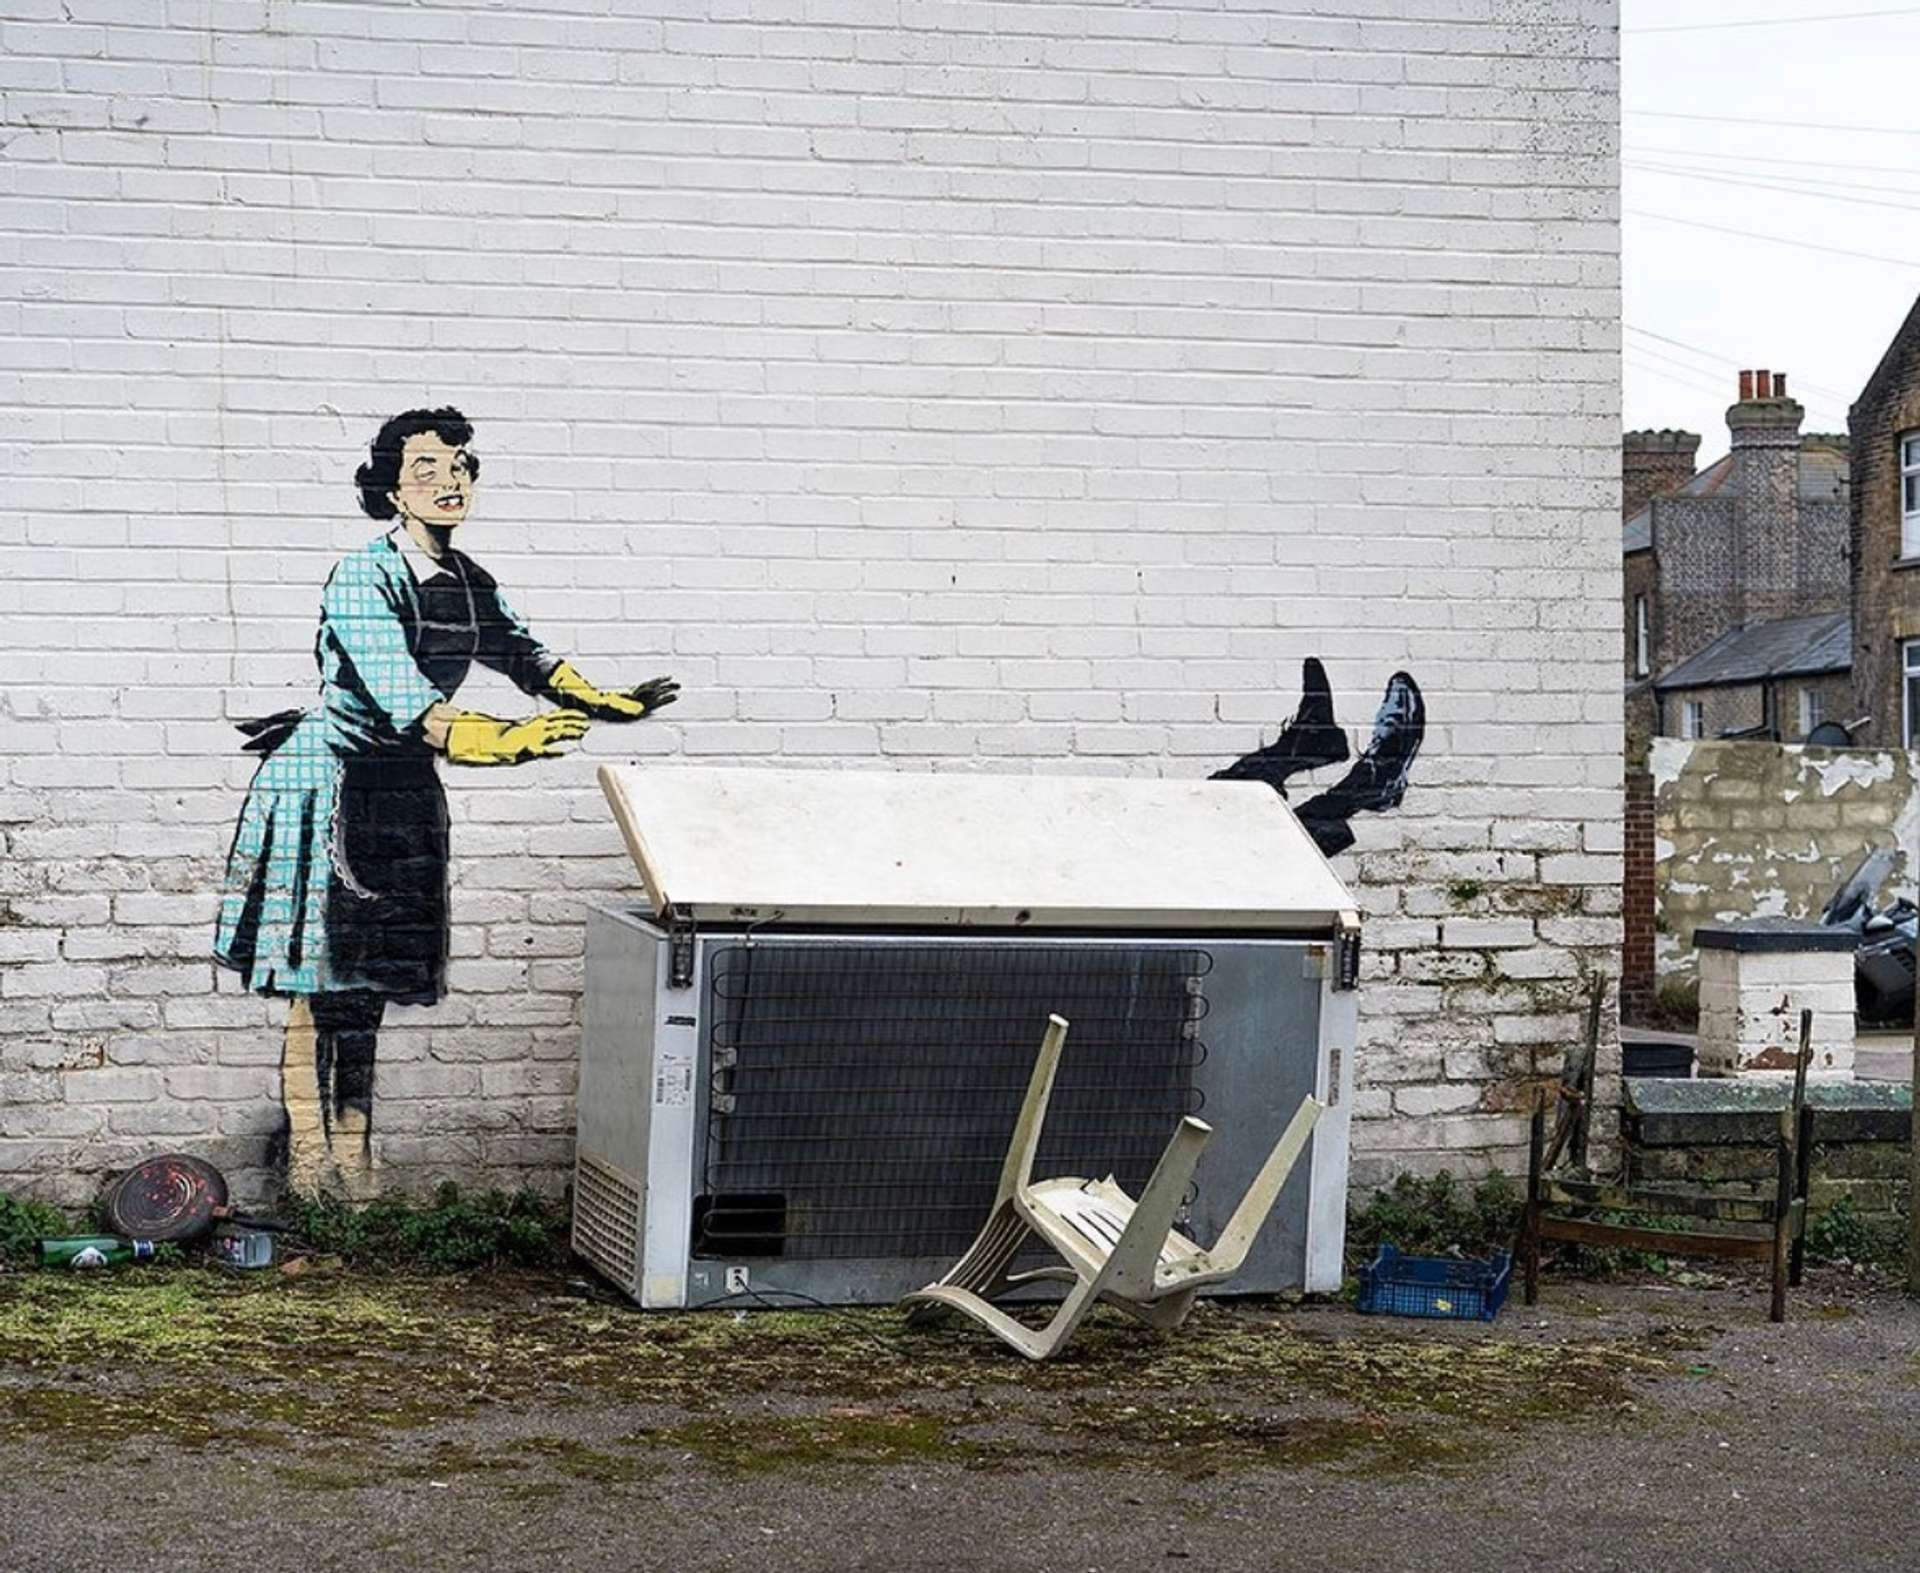 Banksy: Violence vs Innocence